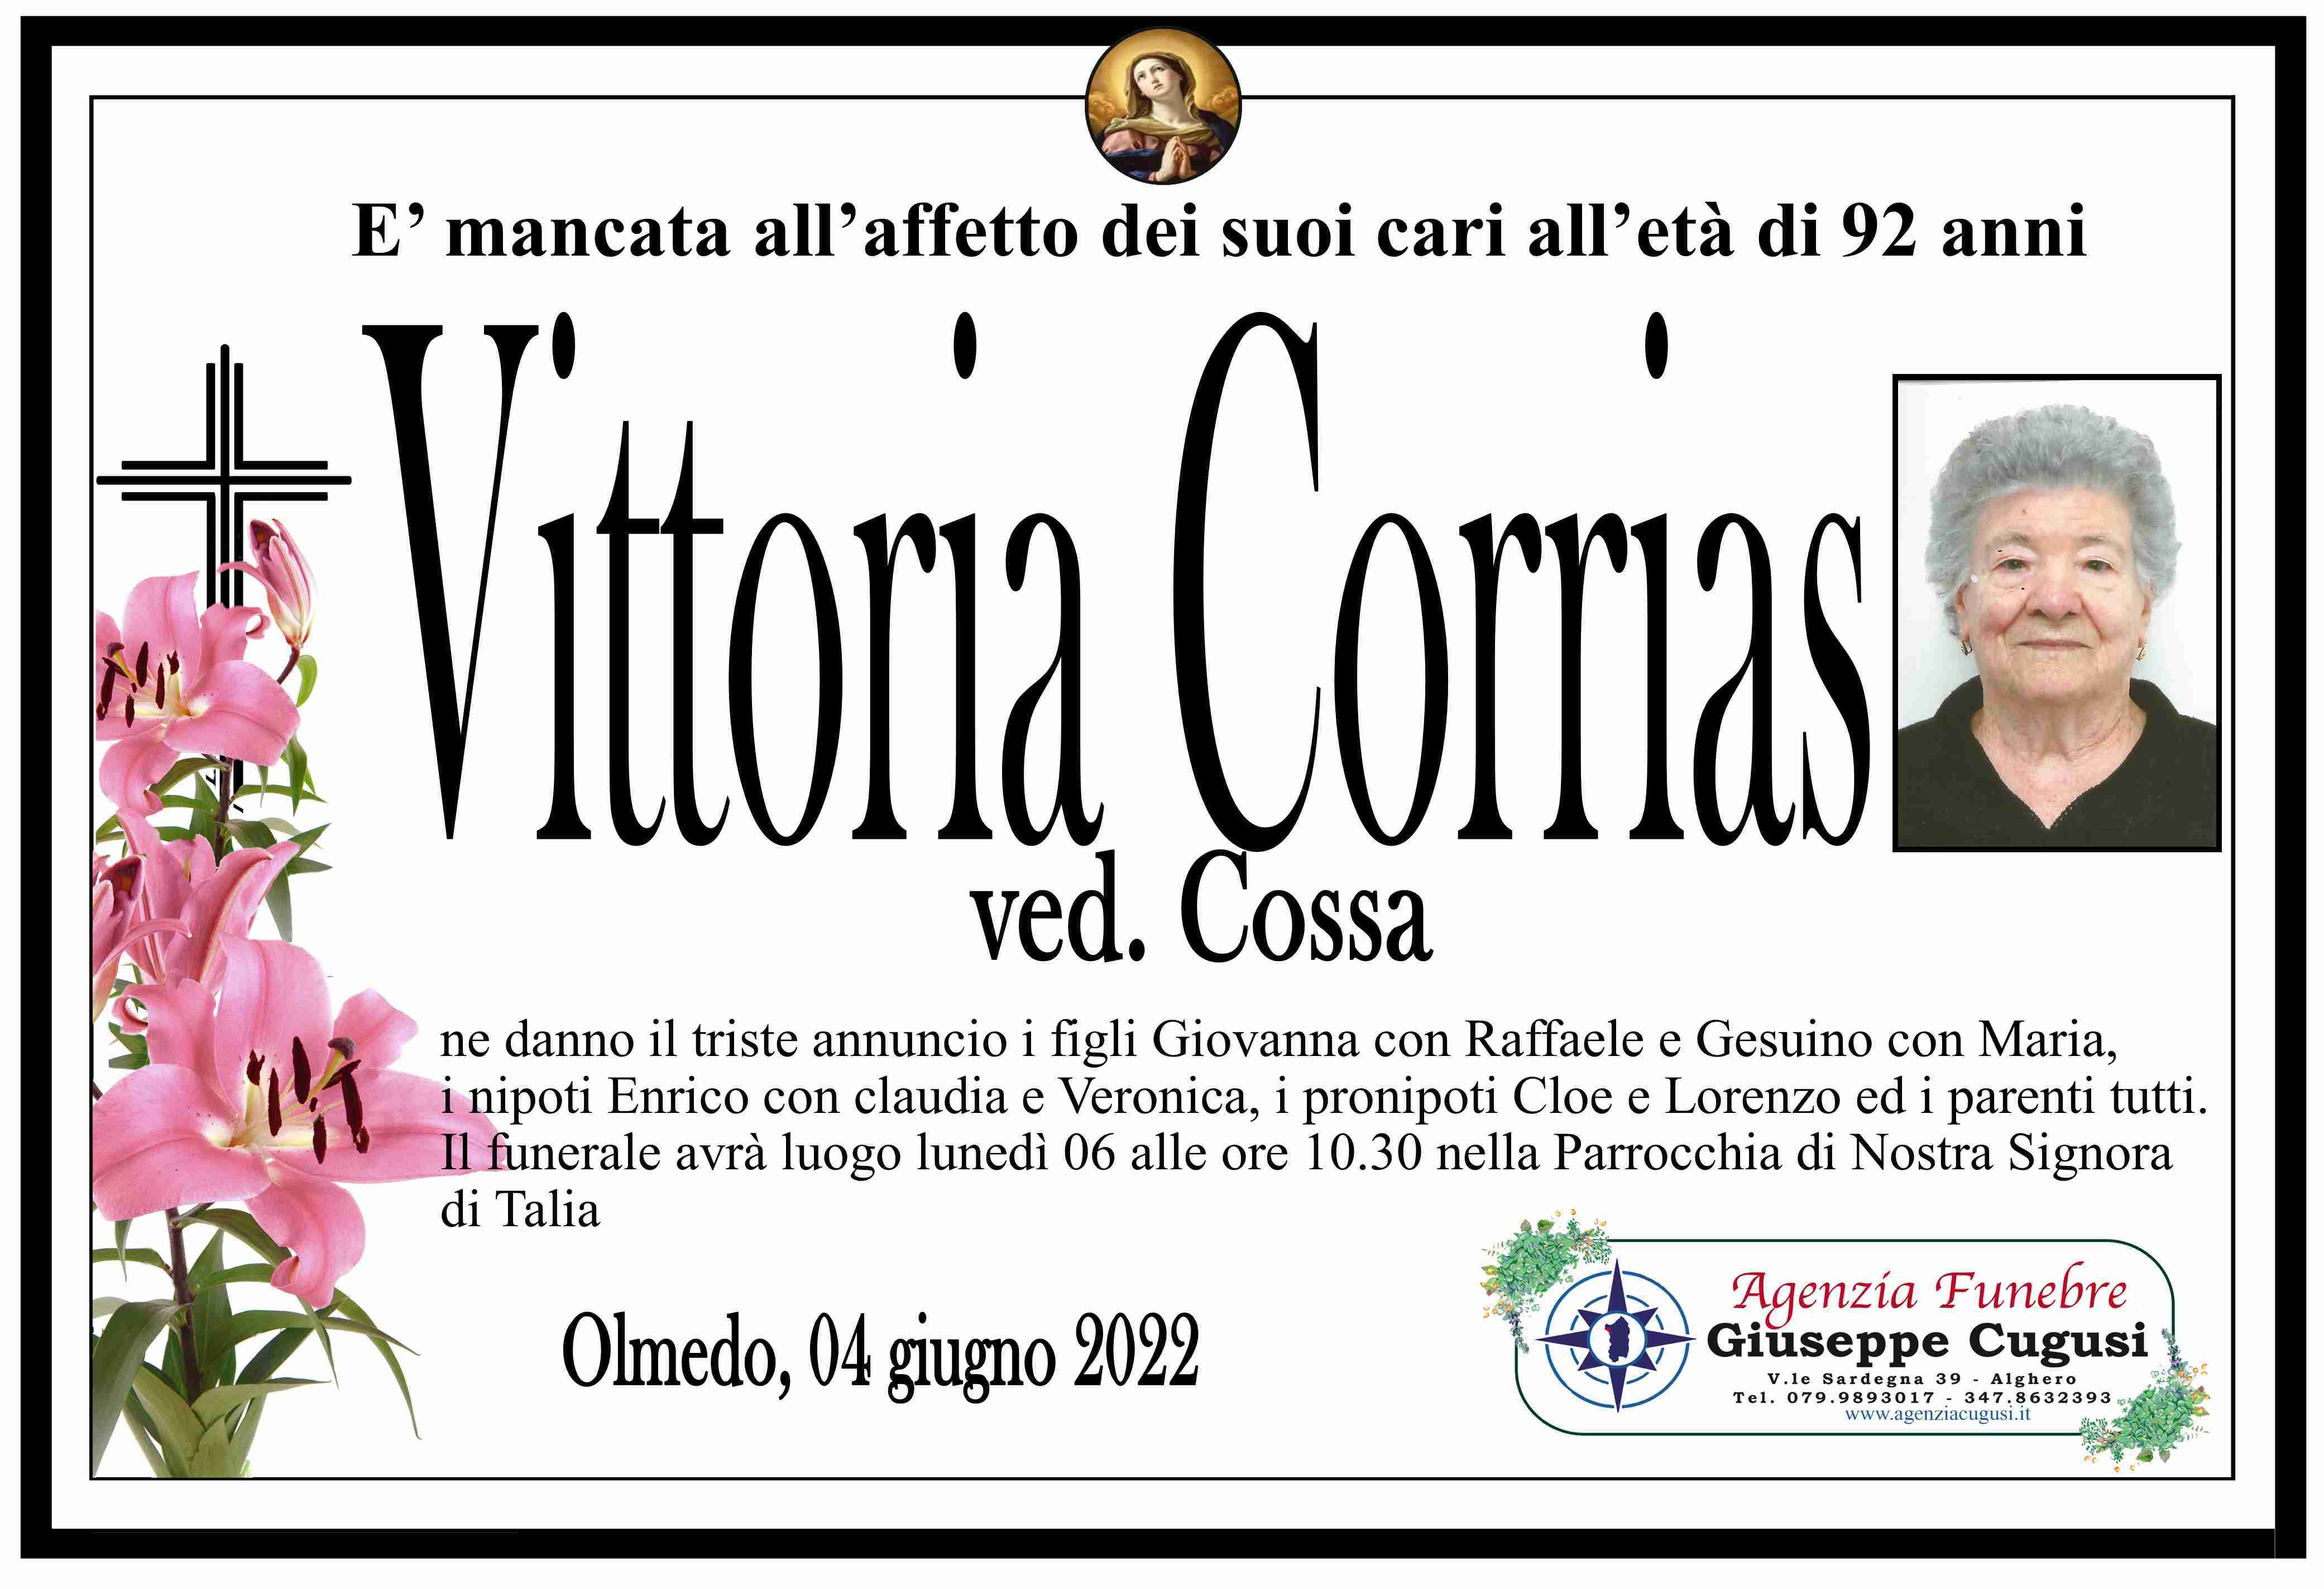 Vittoria Corrias